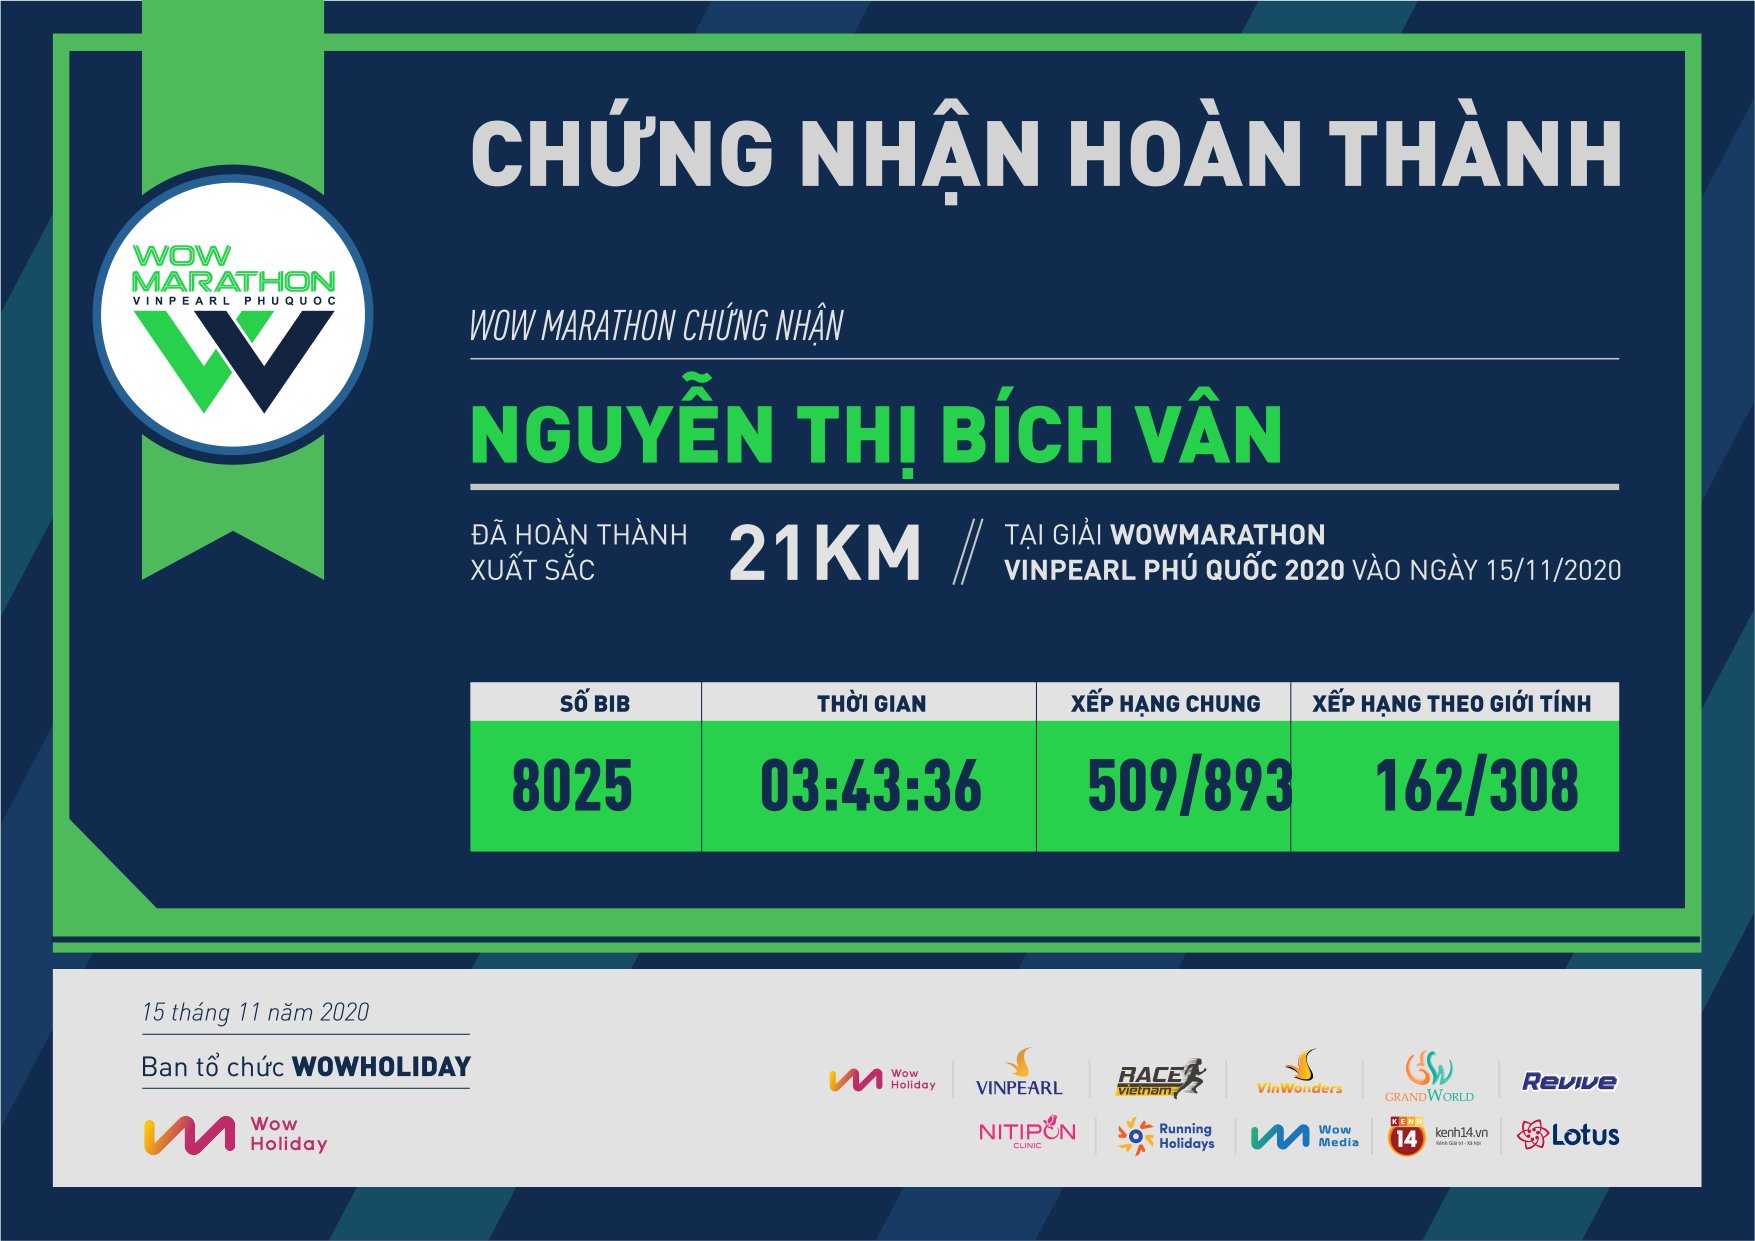 8025 - Nguyễn Thị Bích Vân